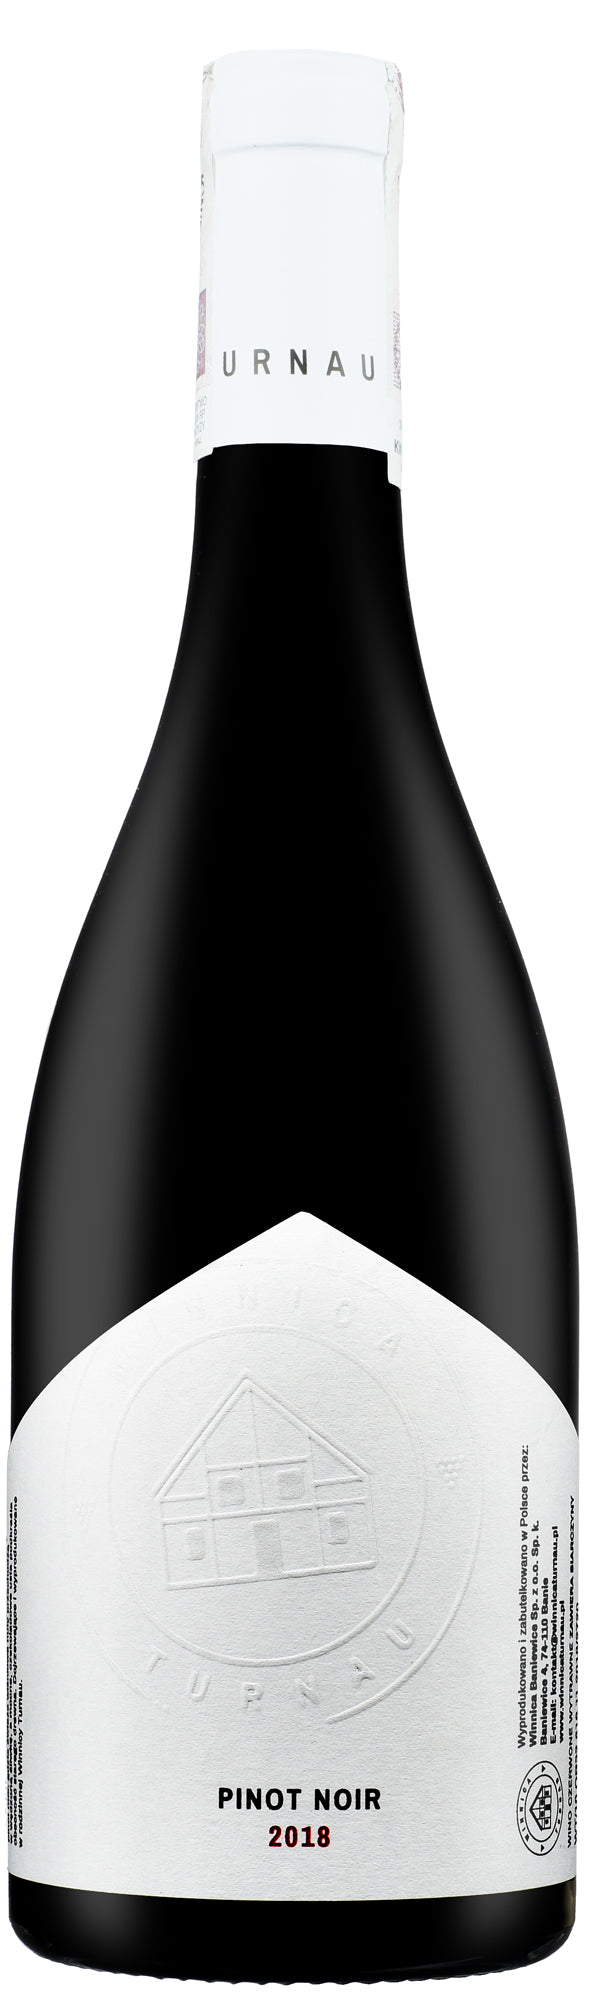 Winnica Turnau Pinot Noir 2020 Wine